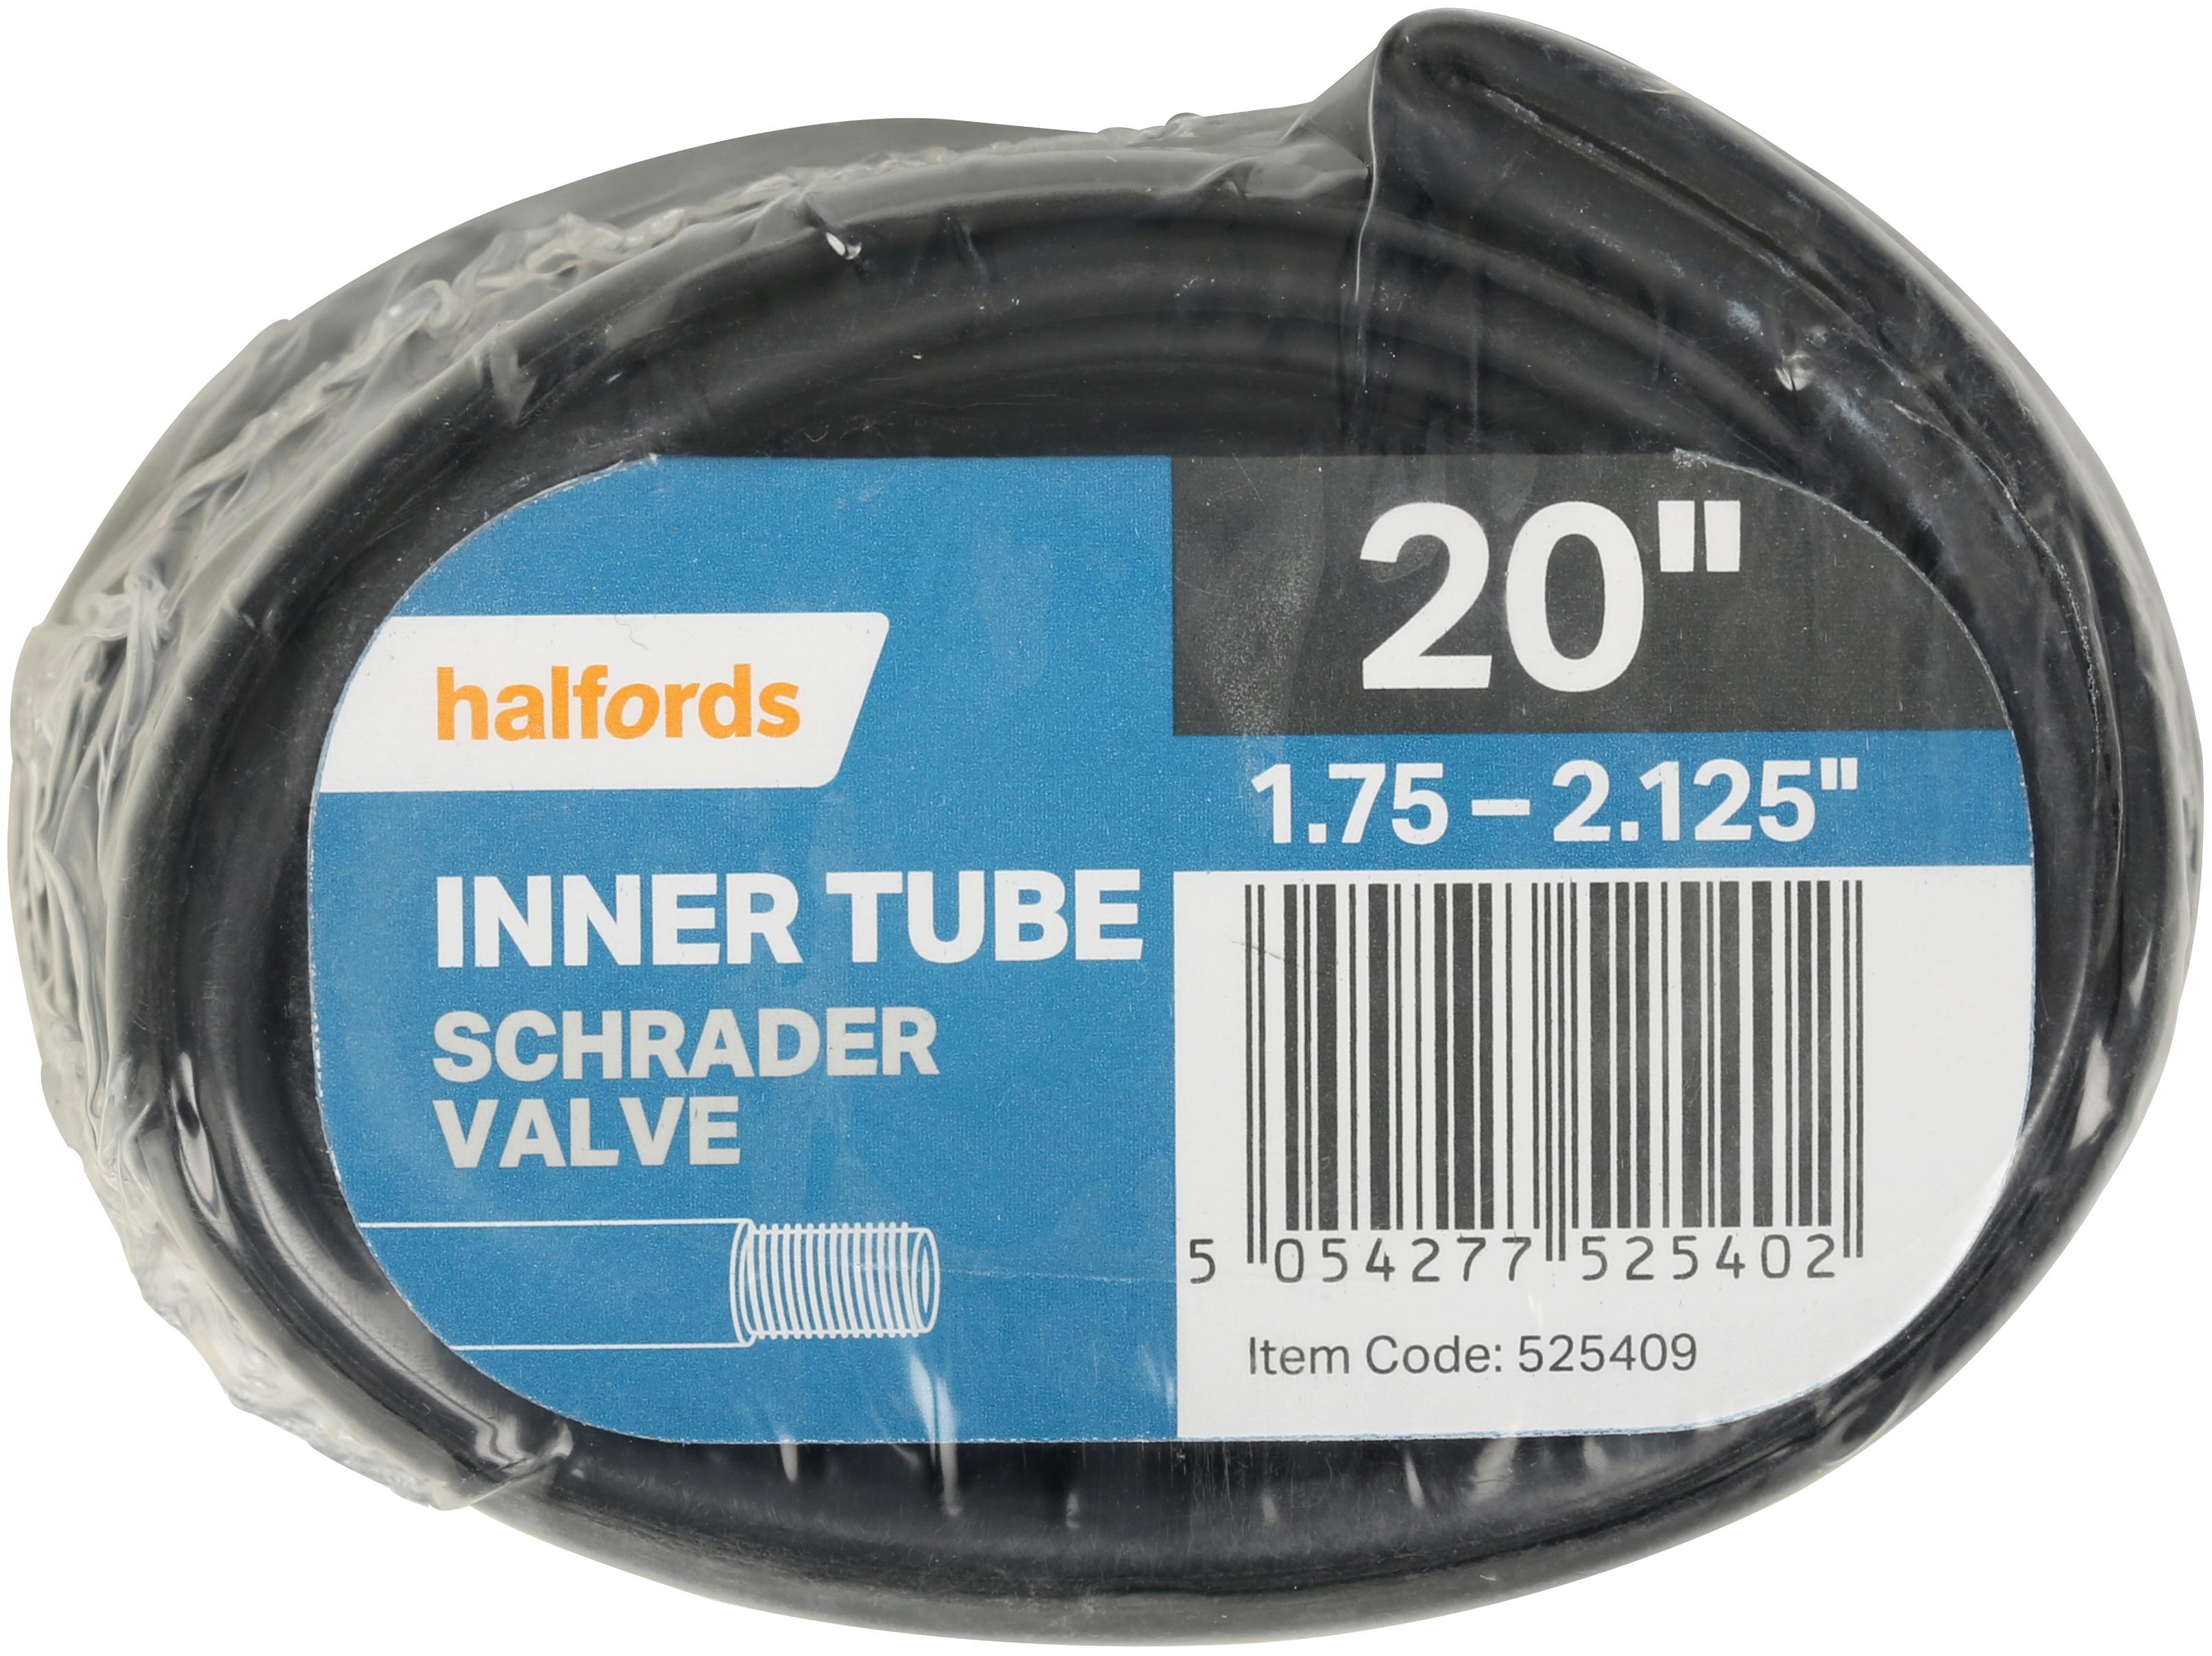 halfords inner tube fitting